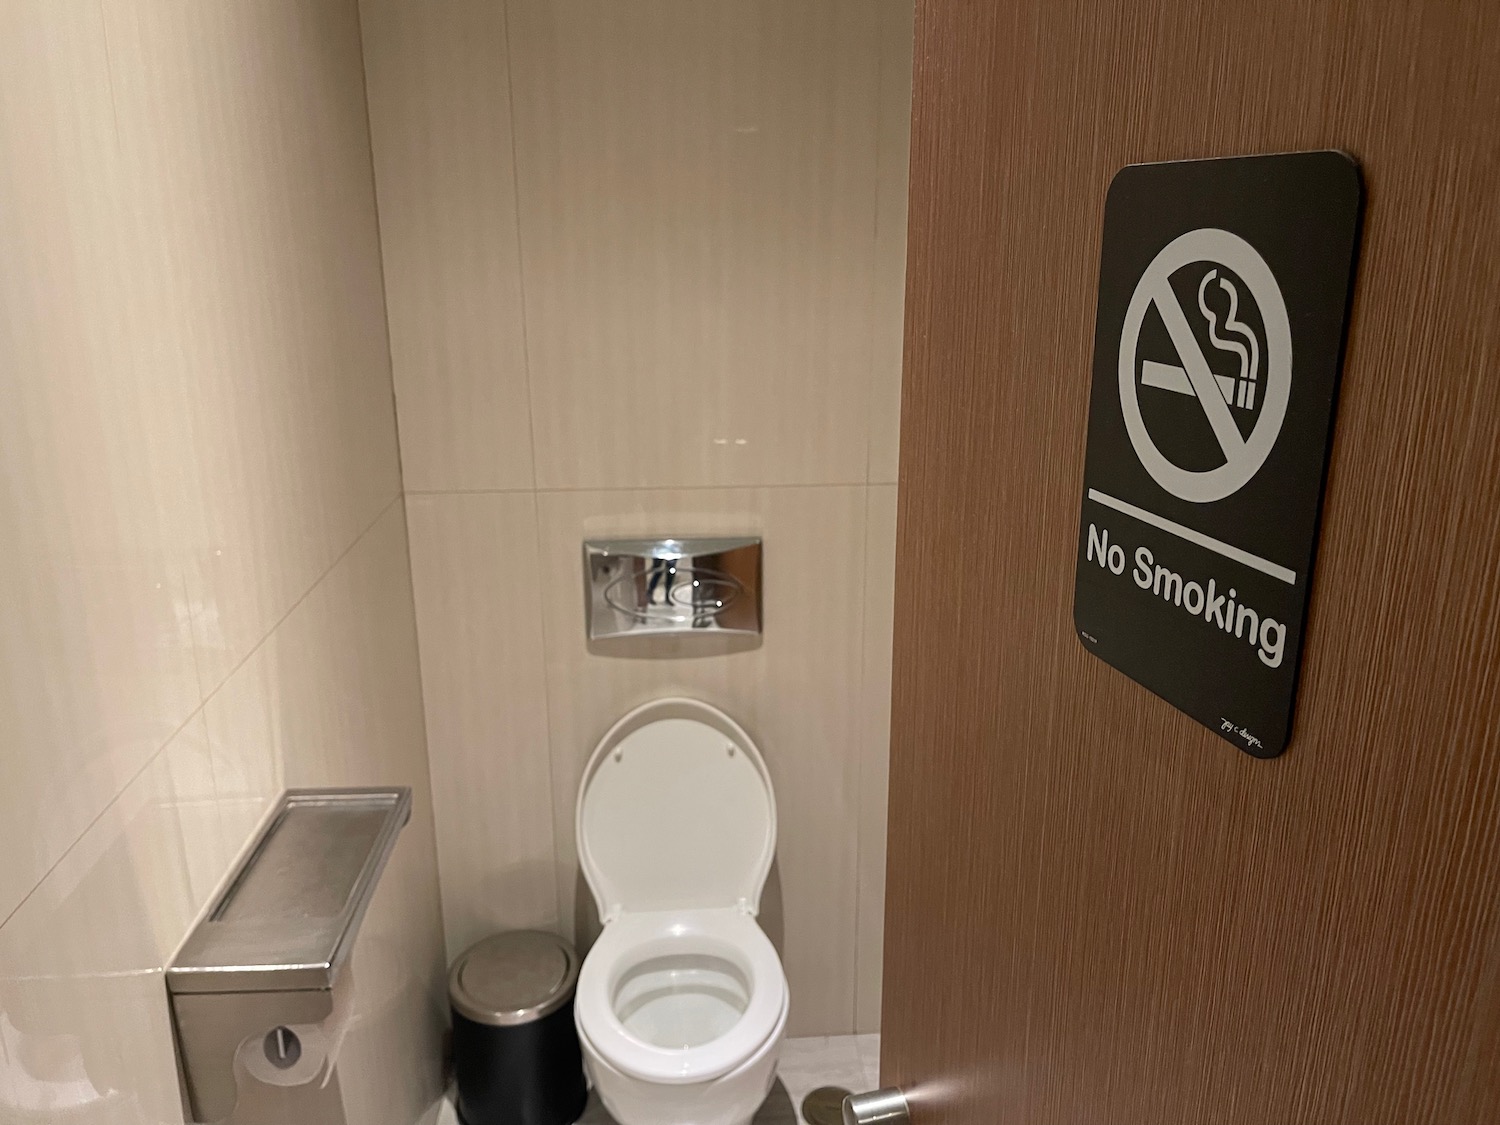 a no smoking sign in a bathroom